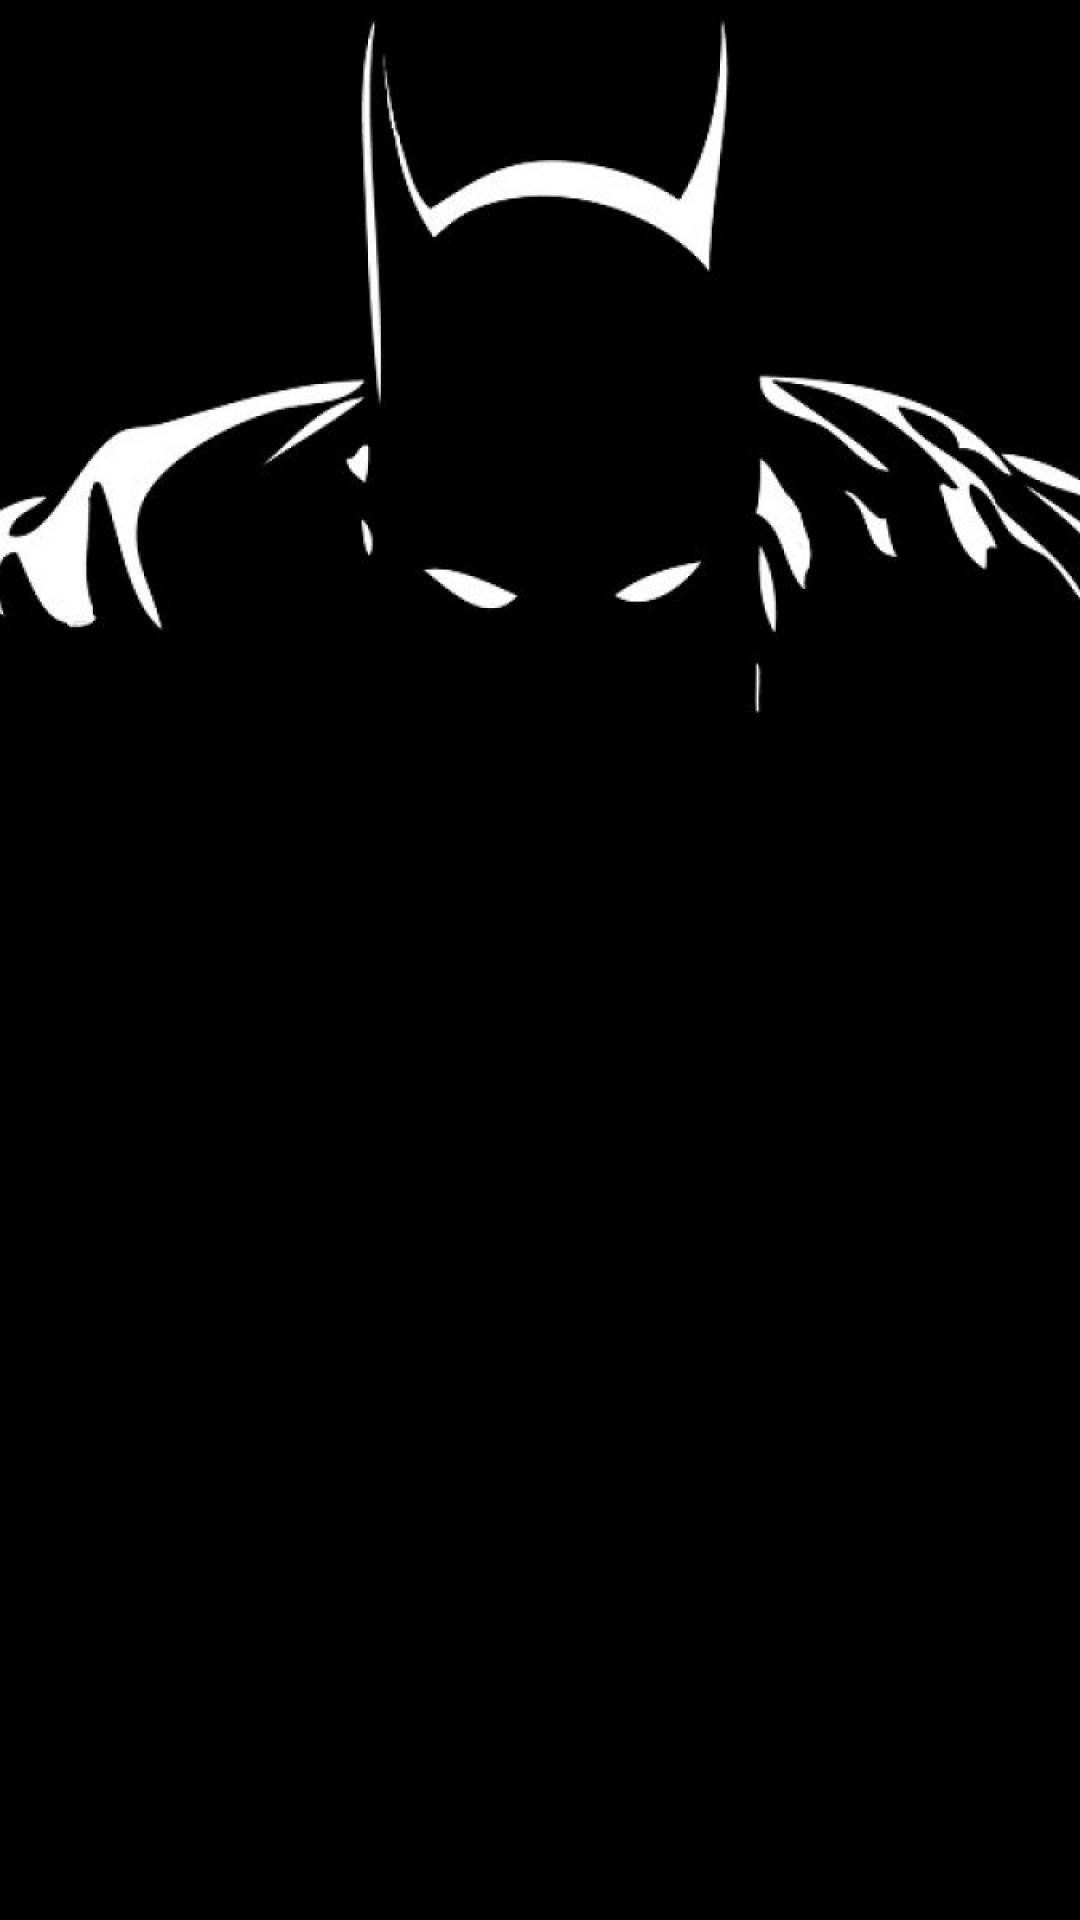 Artemonocromático De Batman Oscuro Para Iphone. Fondo de pantalla